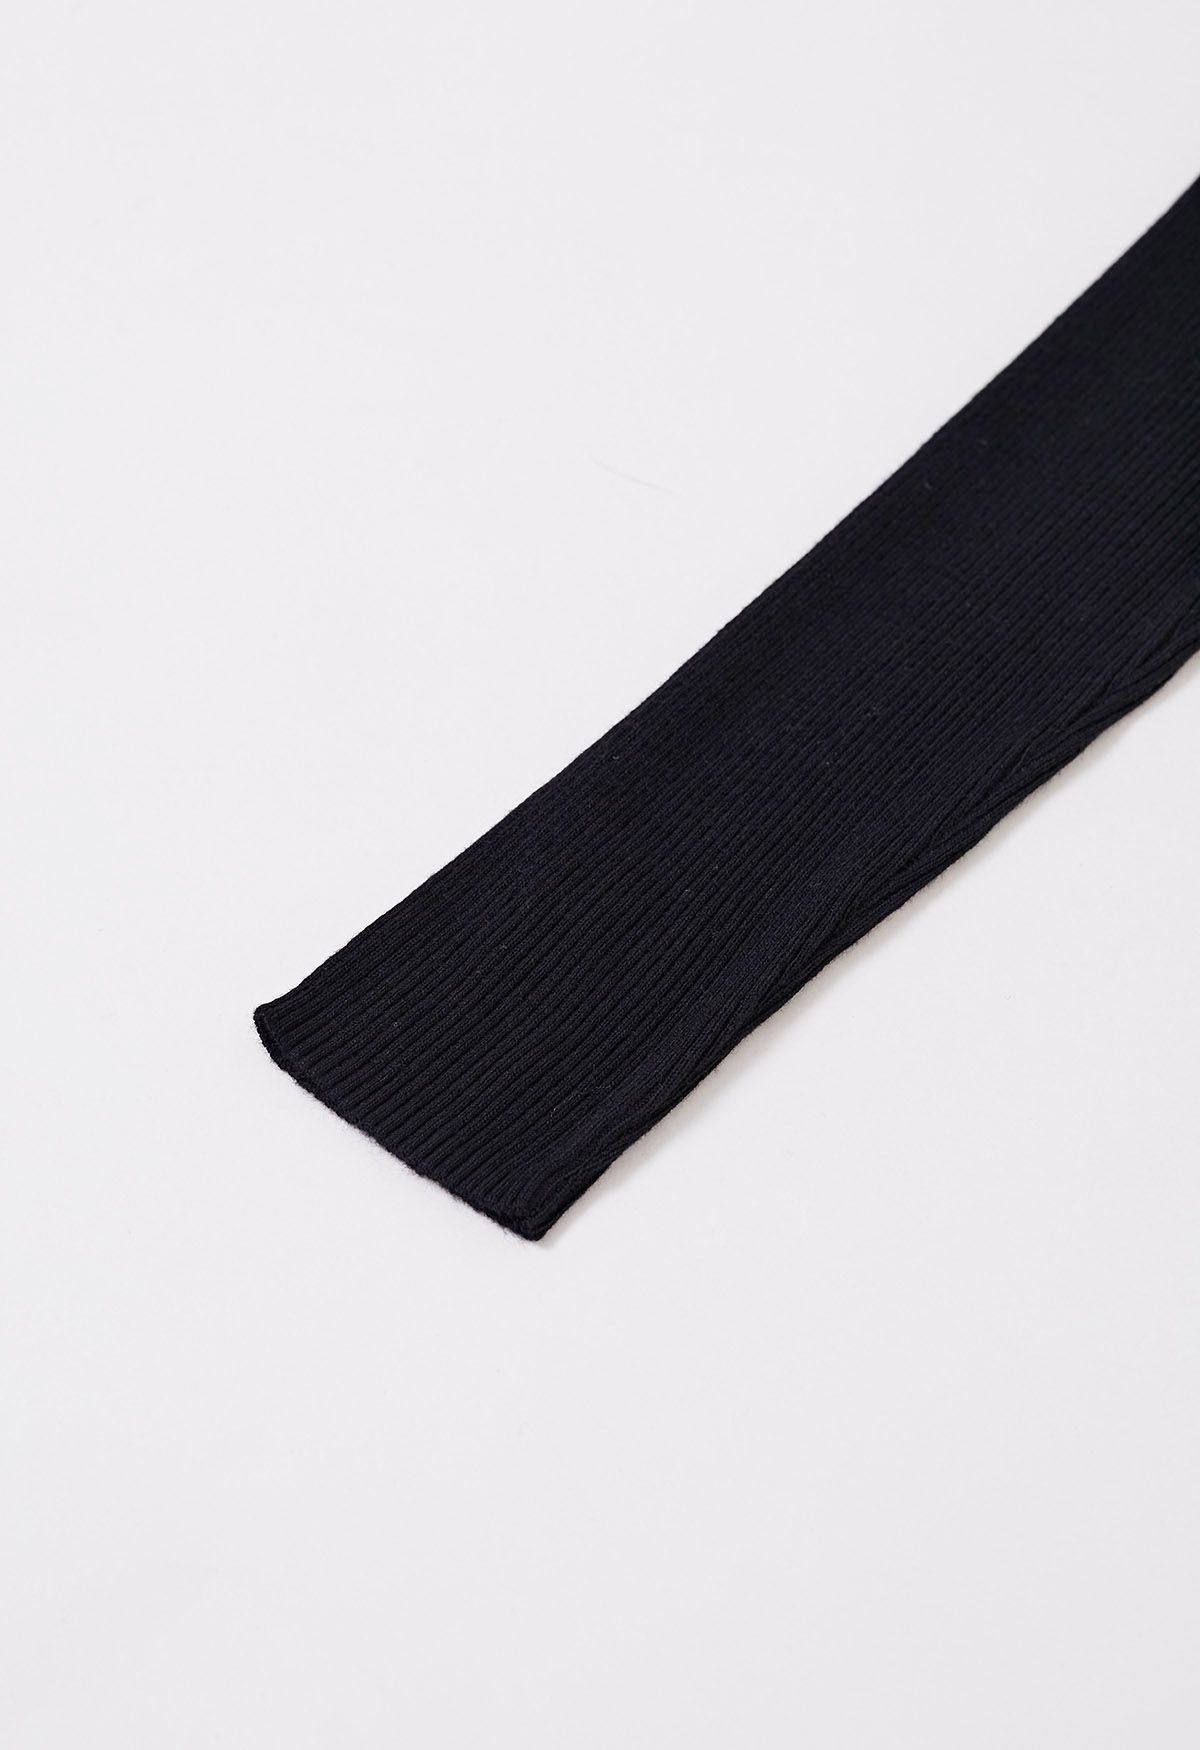 Color Blocked Neckline Knit Top in Black